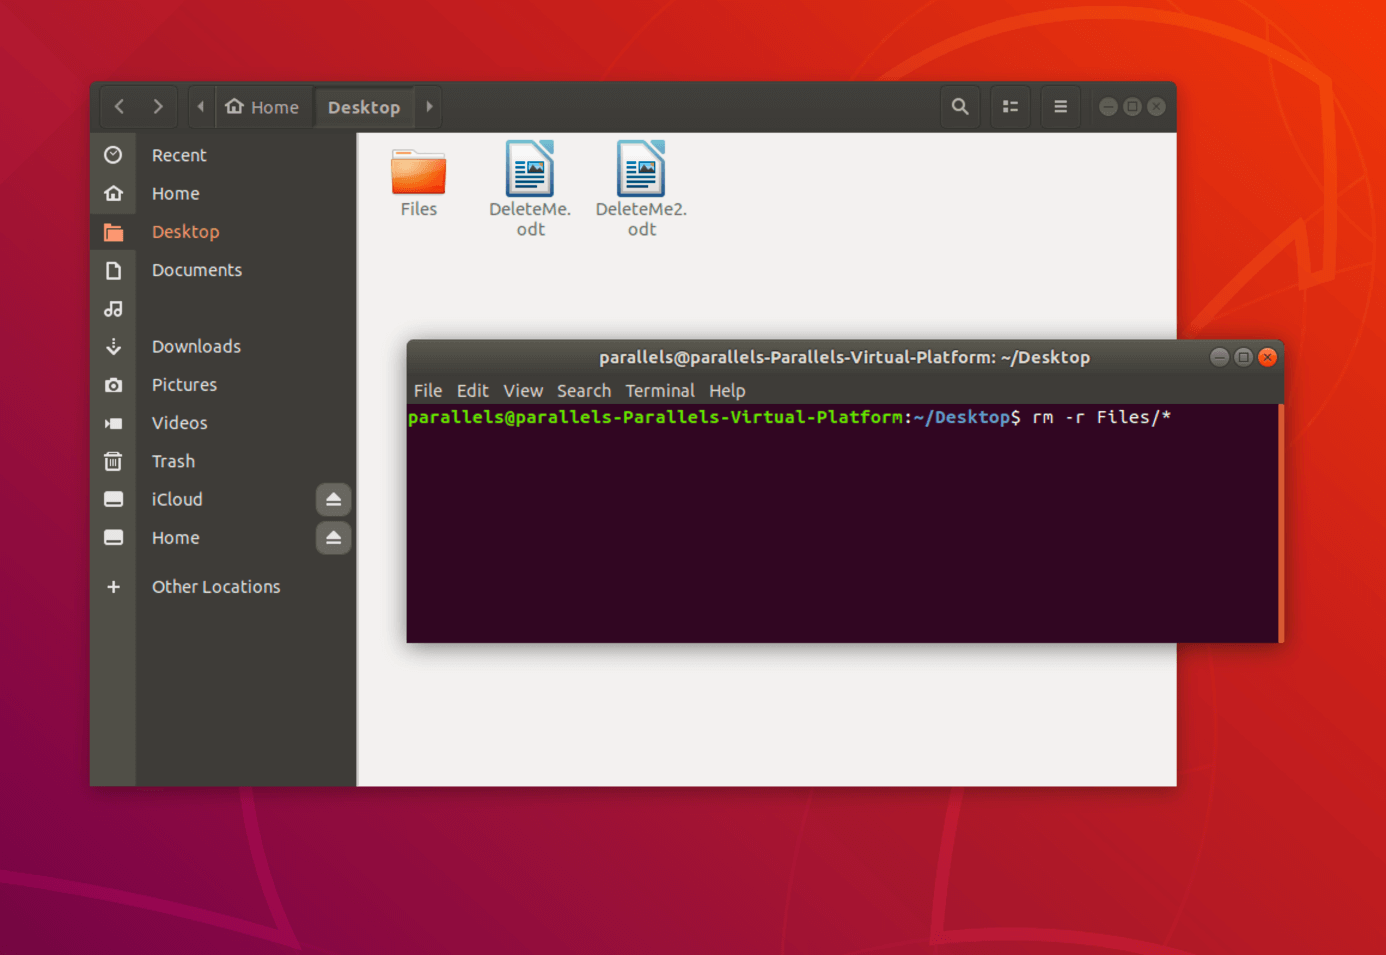  Elimina archivos y subcarpetas de una carpeta determinada a través de la terminal de Linux